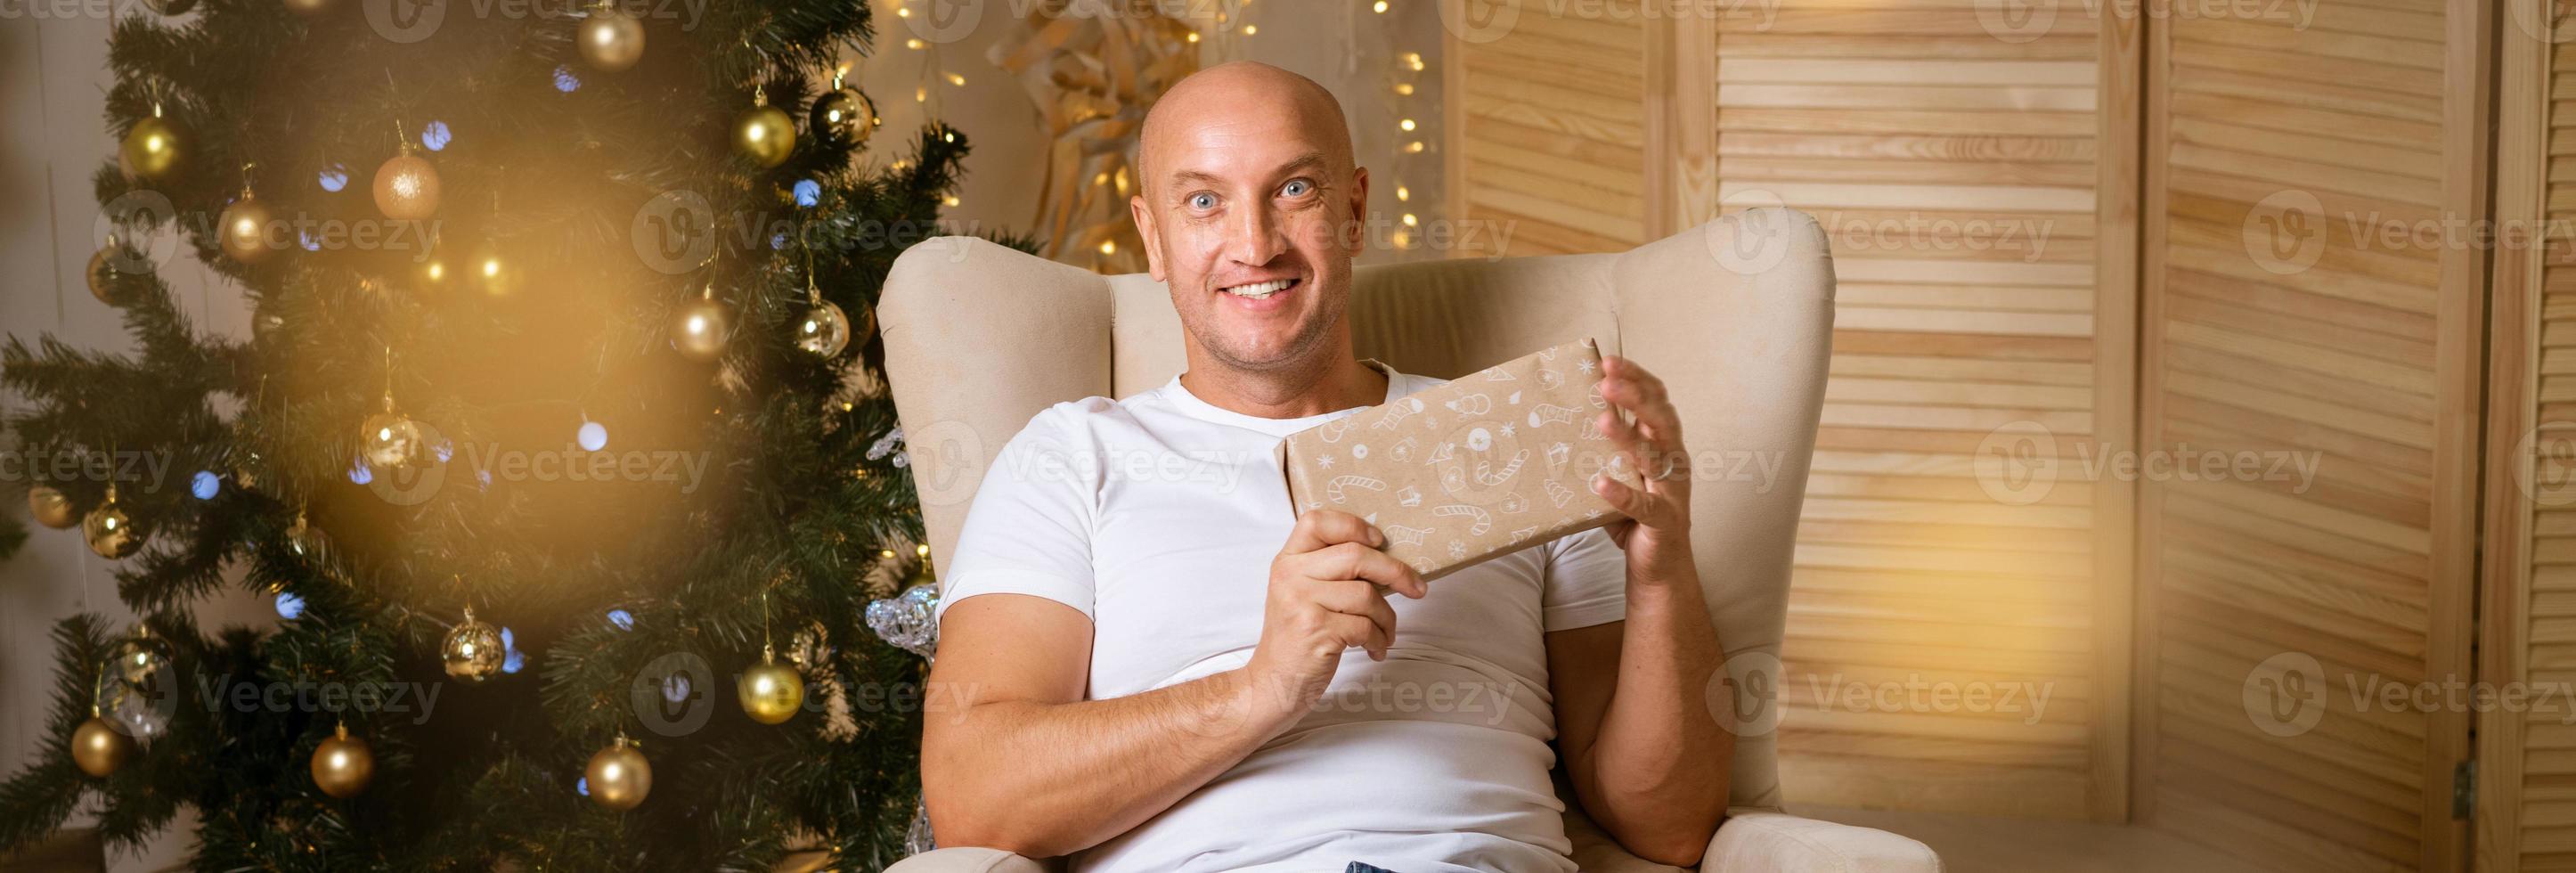 homme heureux dans une chaise sur le fond de l'arbre de noël avec un cadeau dans ses mains photo